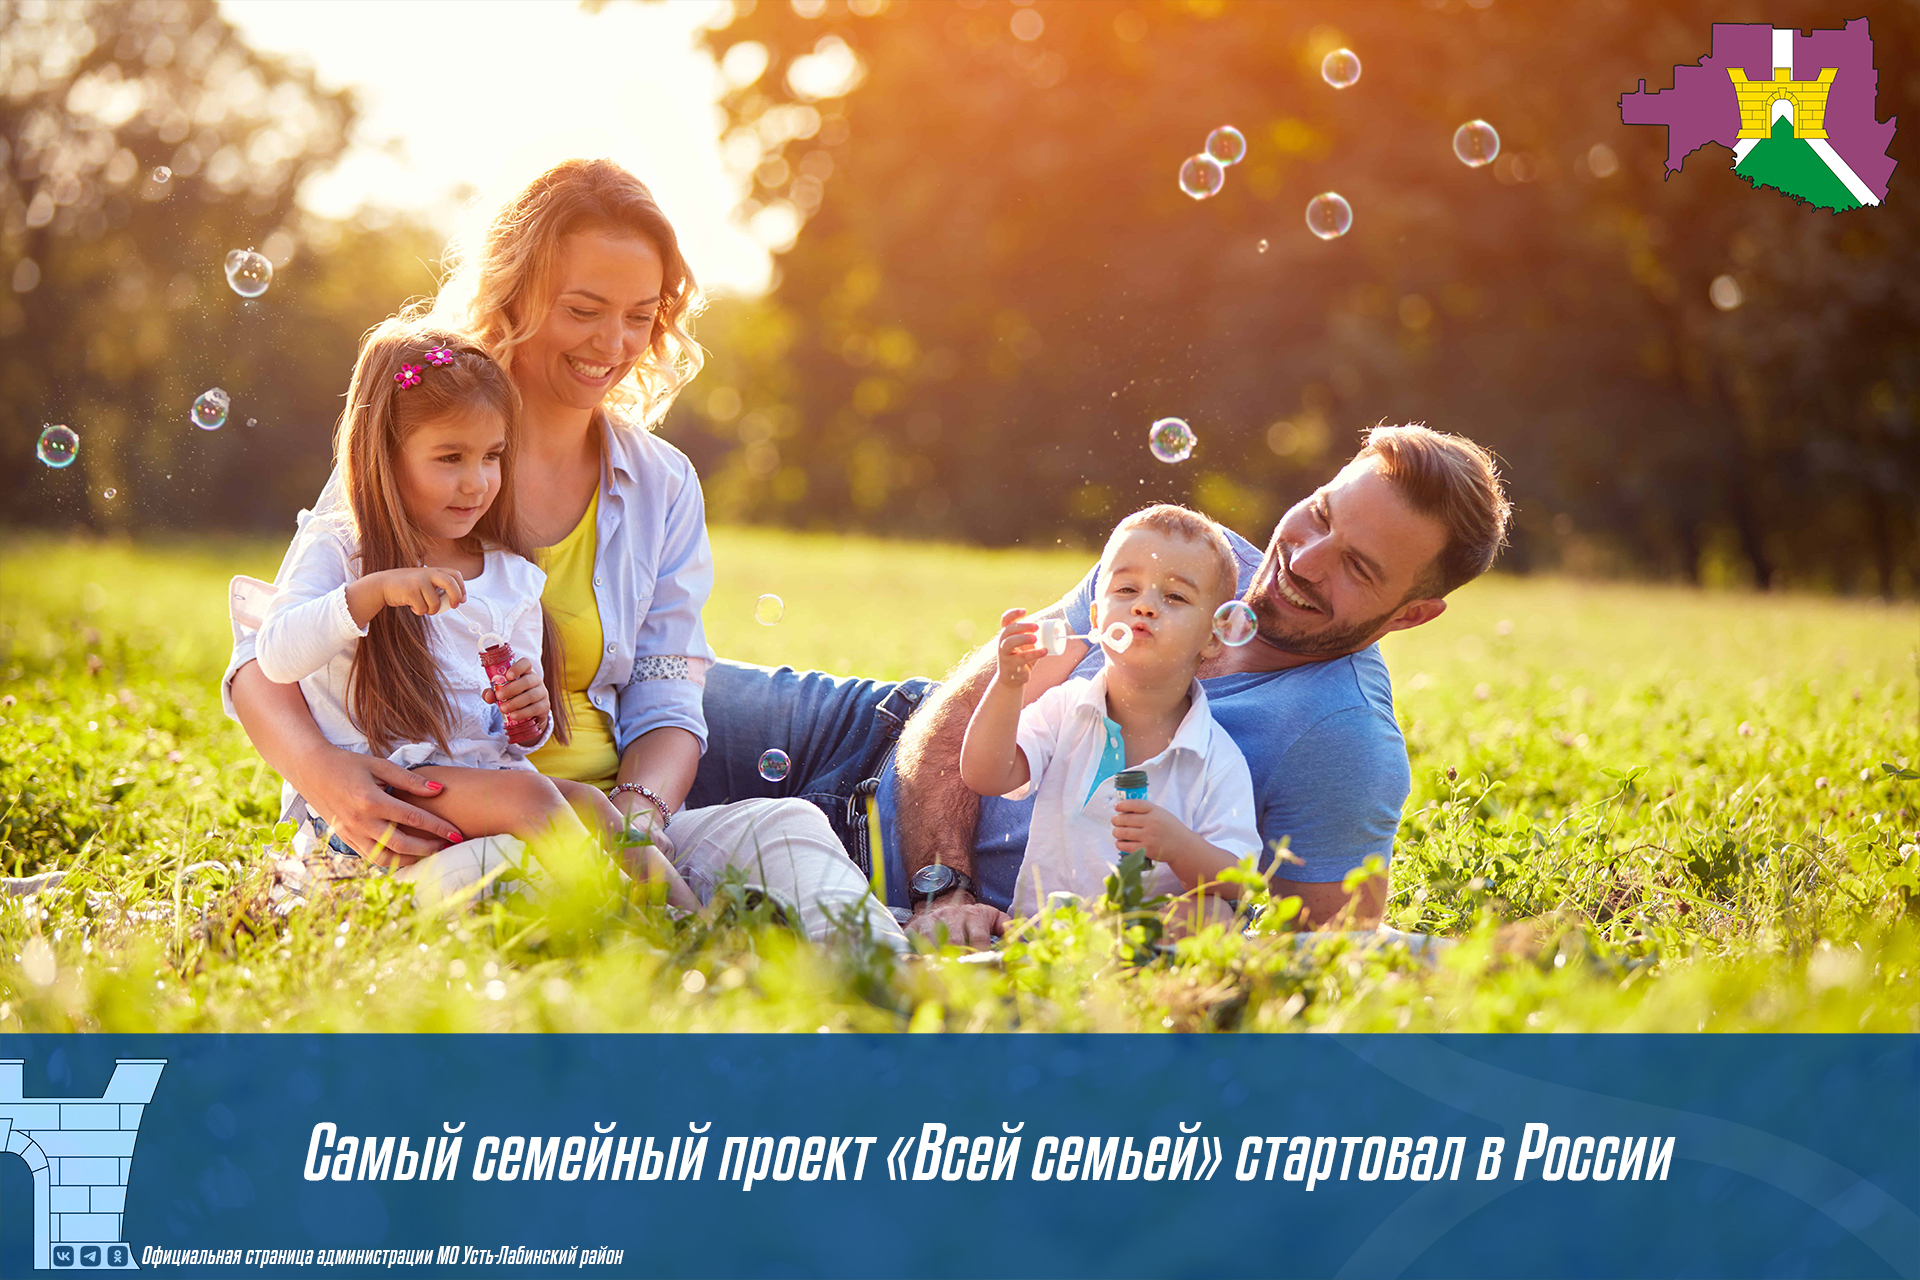 Самый семейный проект «Всей семьей» стартовал в России